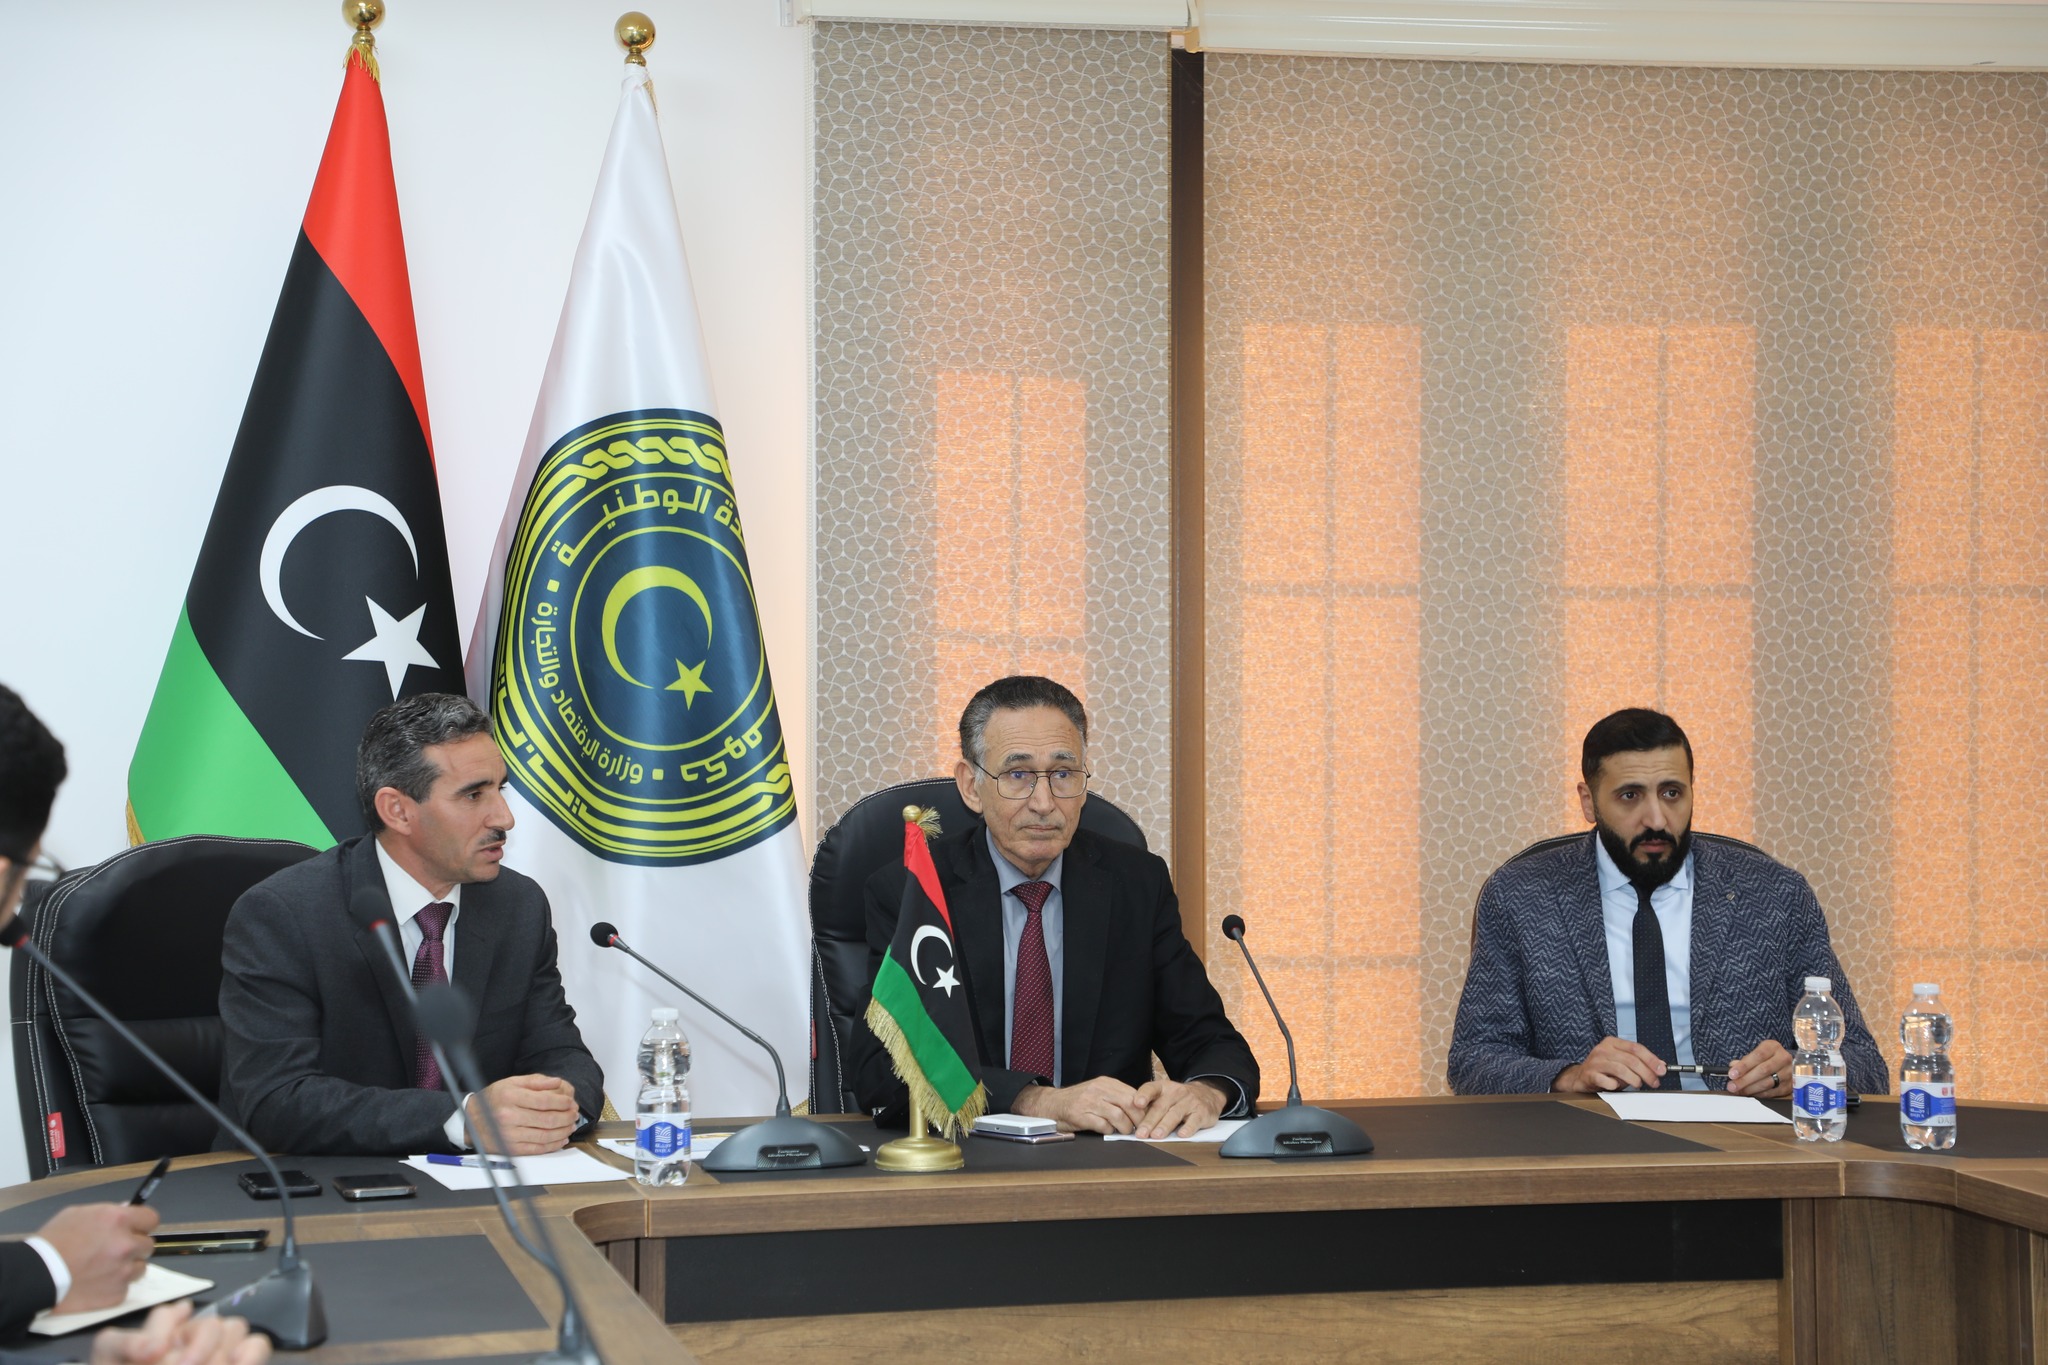 شبكة ليبيا للتجارة تطلق نشرة الأسعار المحلية والعالمية بأشراف وزارة الاقتصاد والتجارة.